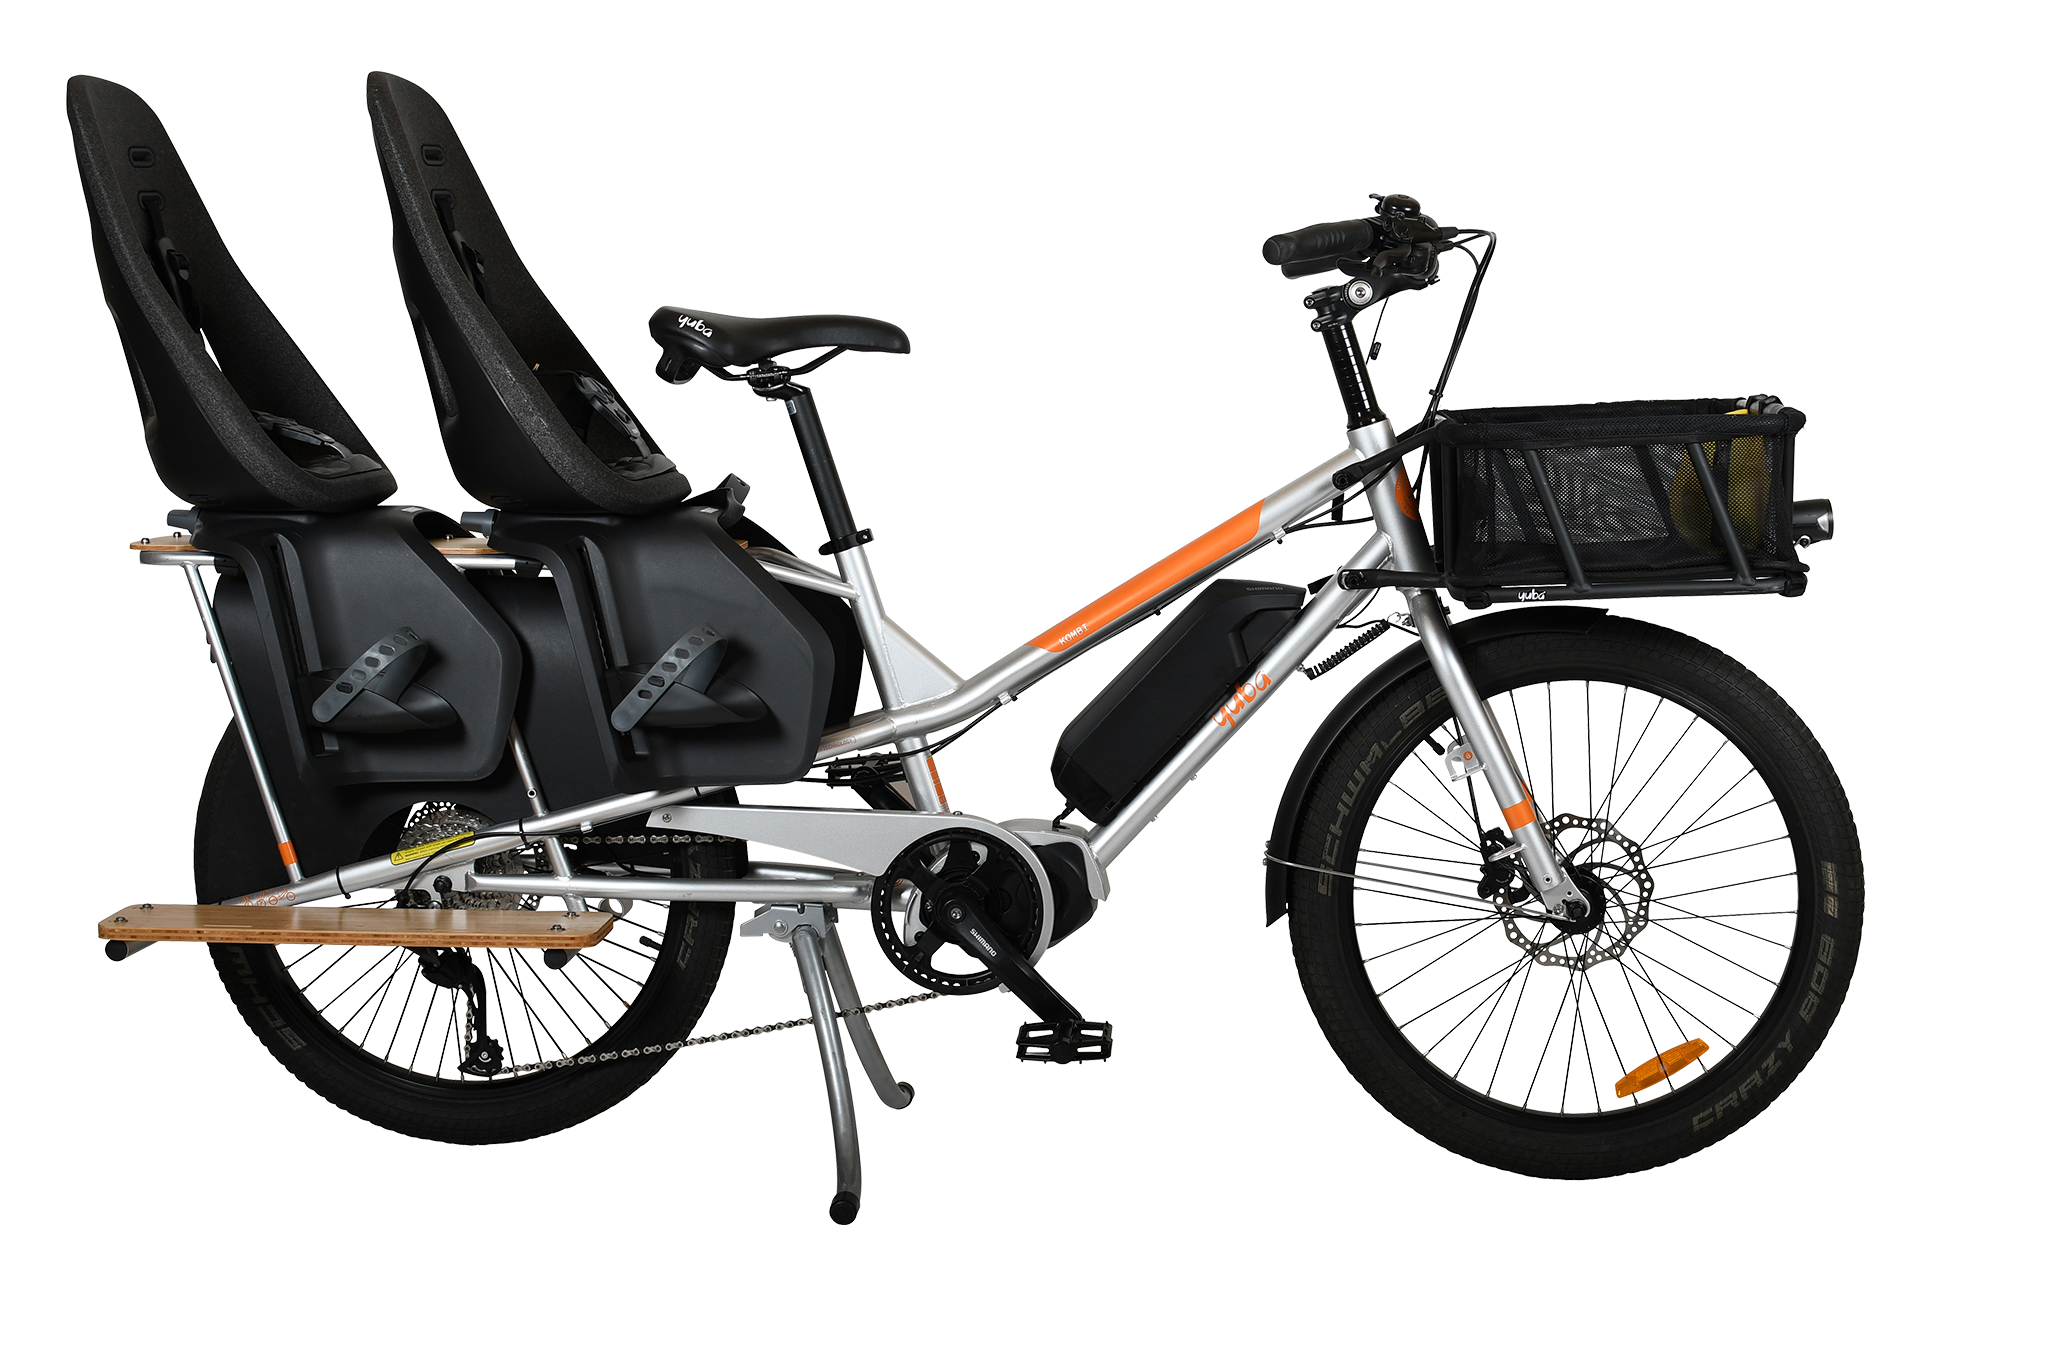 Yuba Kombi E5 electric longtail cargo bike